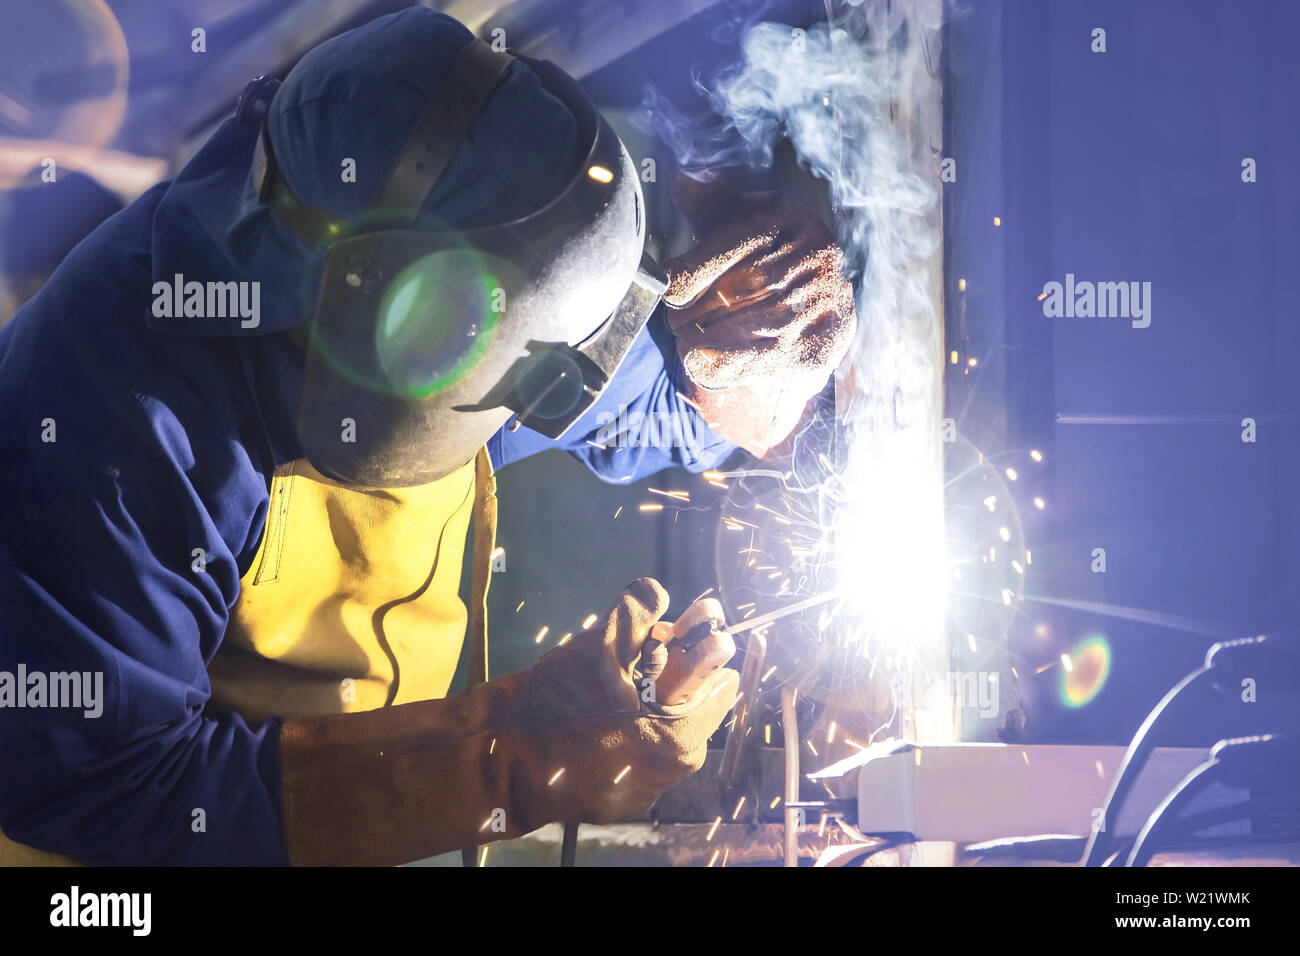 Man welding in workshop. Arc welding. Stock Photo